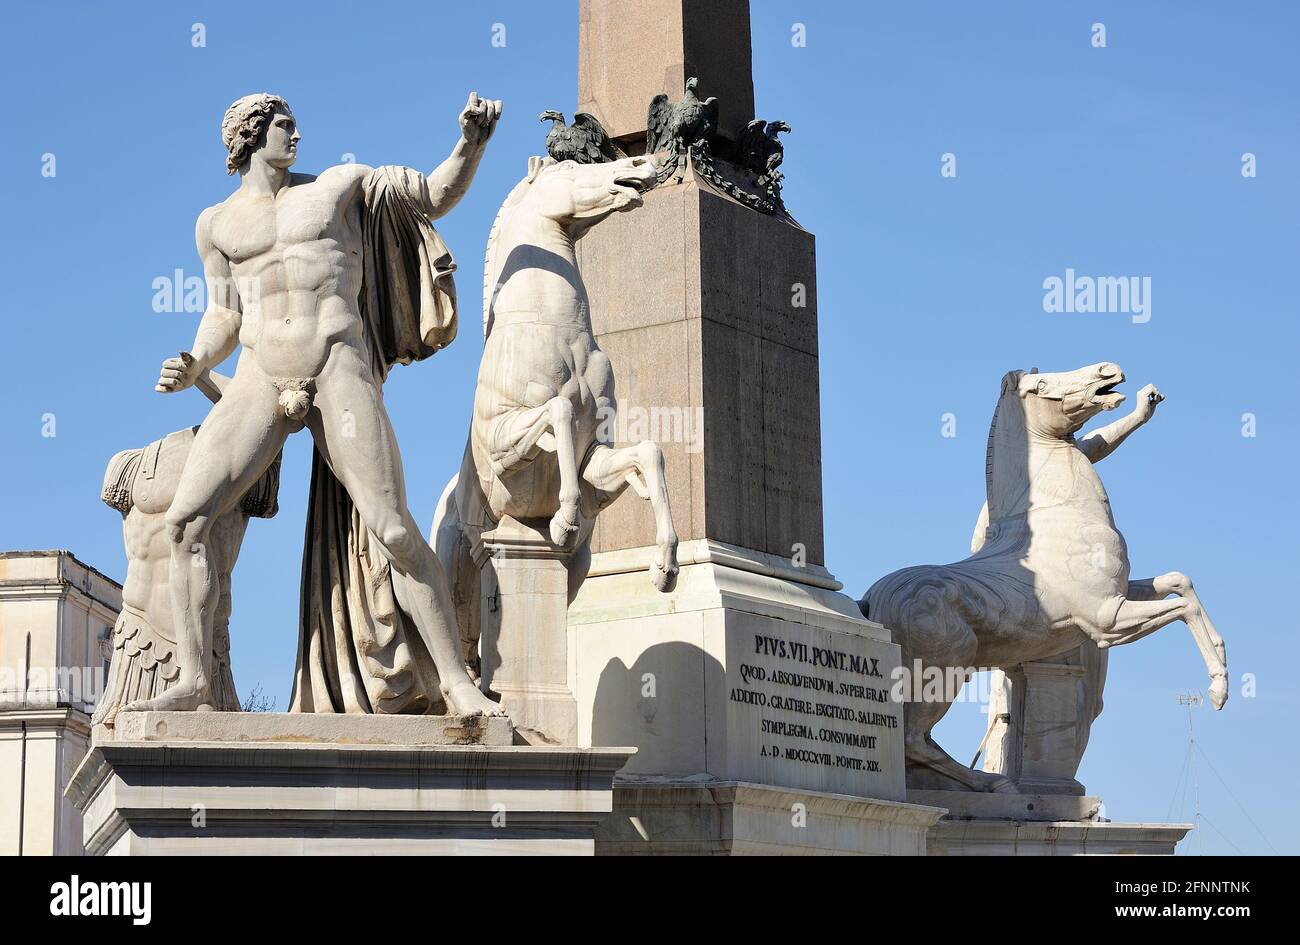 italia, roma, fuente de monte cavallo con las estatuas de castor y pollux Foto de stock